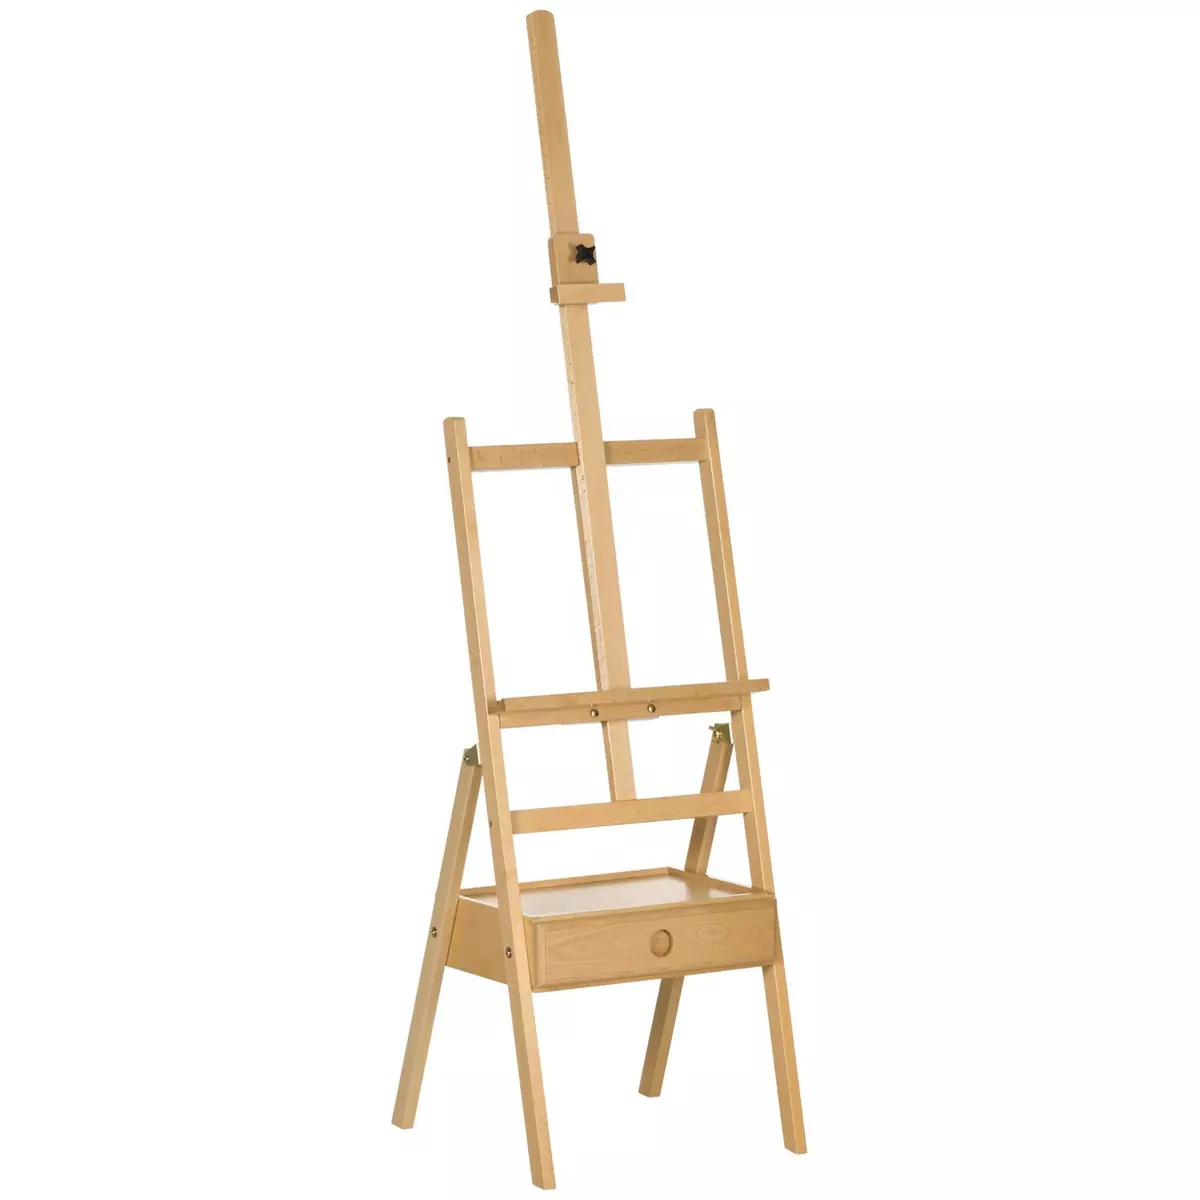 VINSETTO Chevalet sur pied avec tiroir - chevalet d'artiste - hauteur réglable - bois de hêtre verni